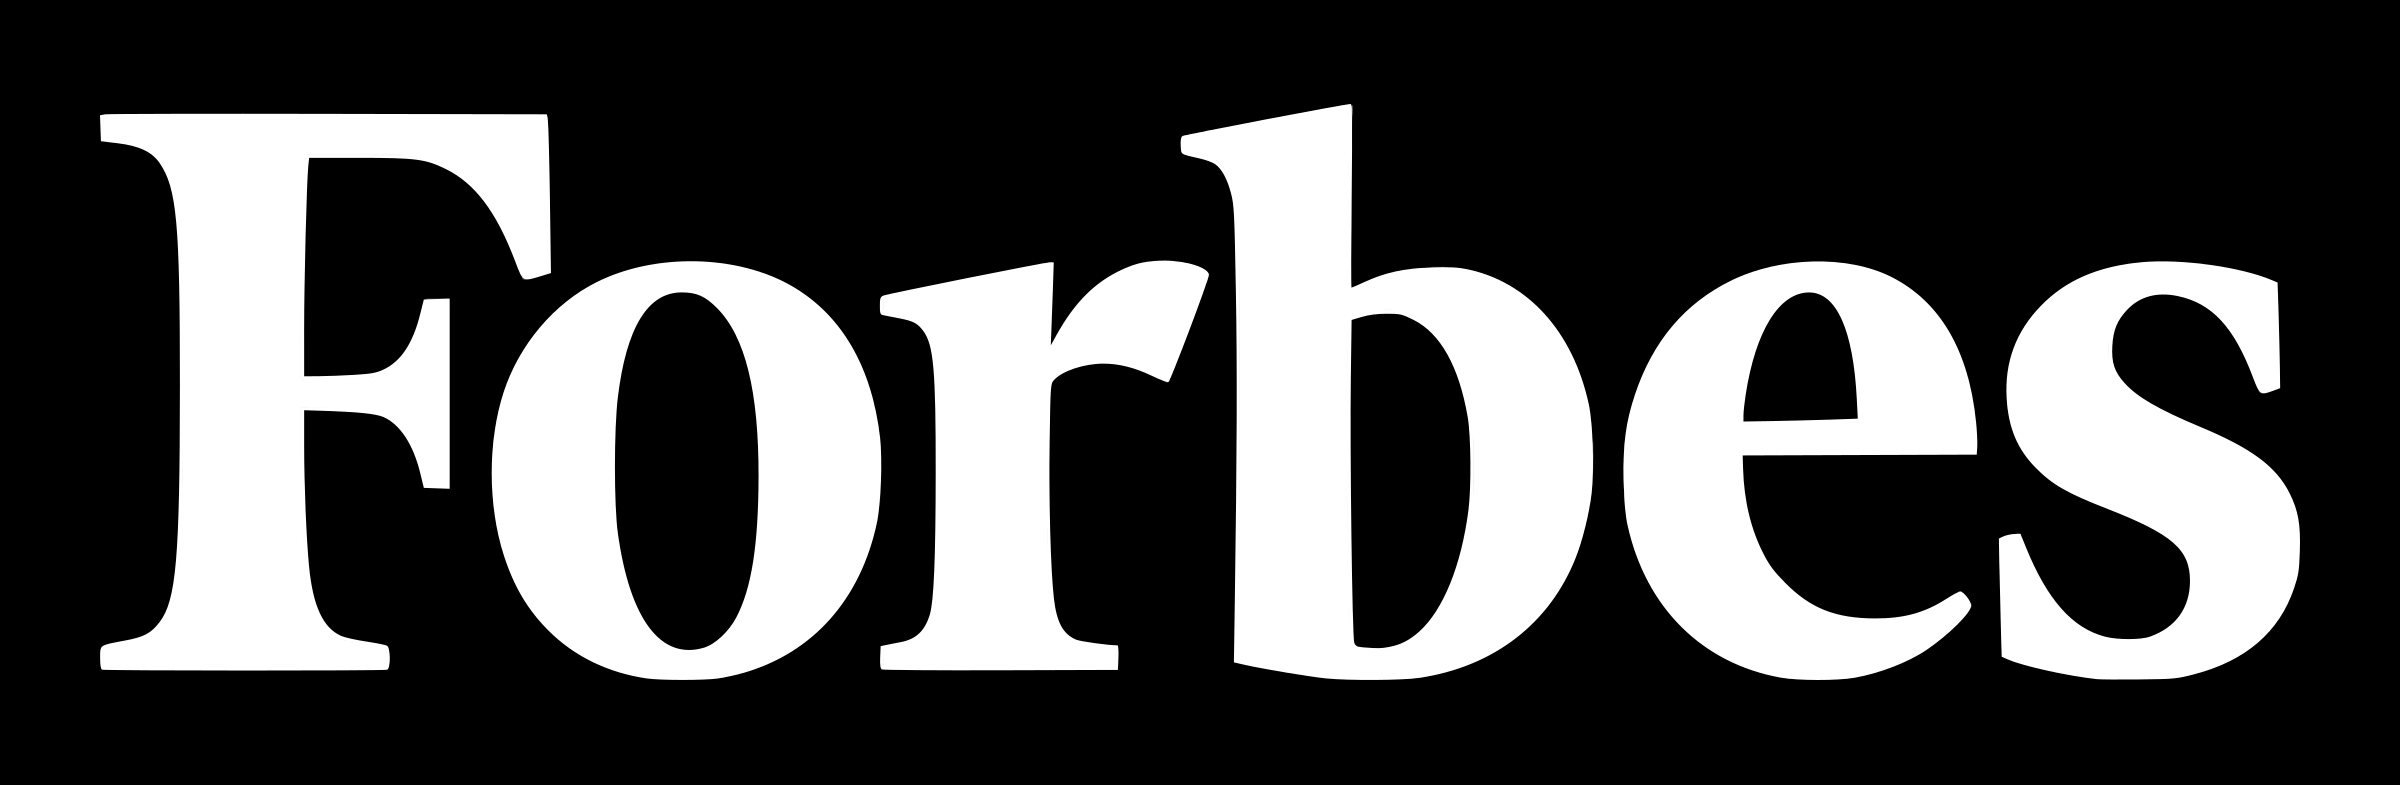 forbes-logo-white